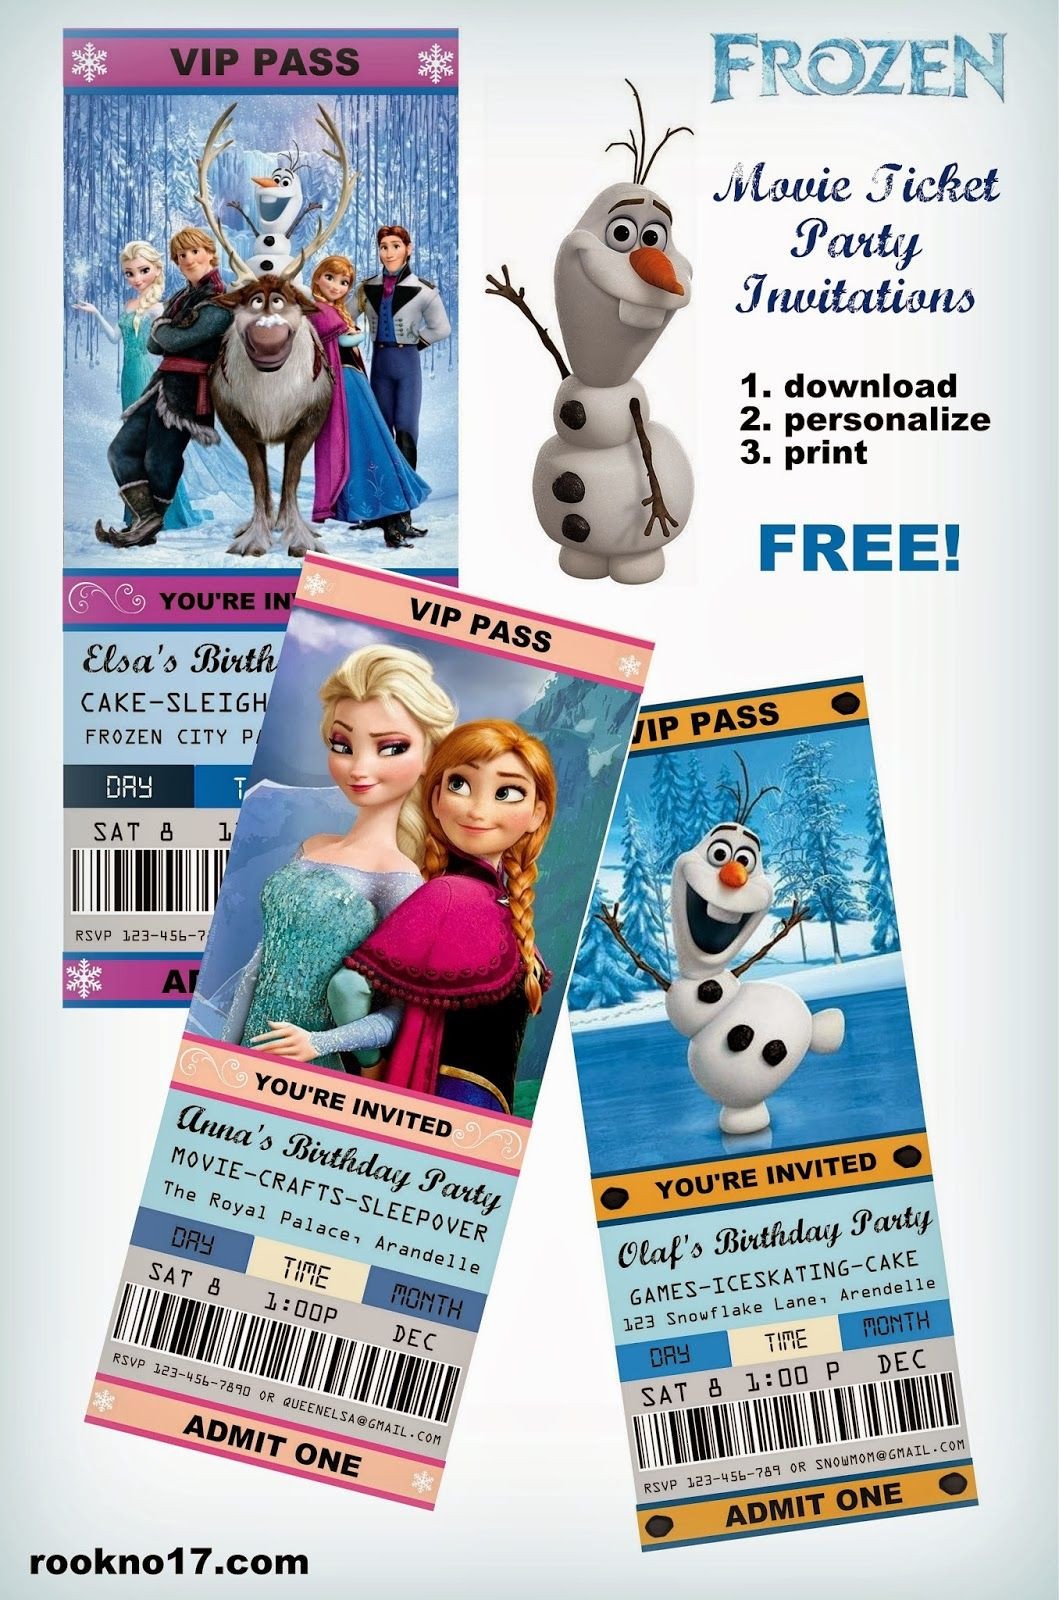 Free Frozen Invitations on Pinterest